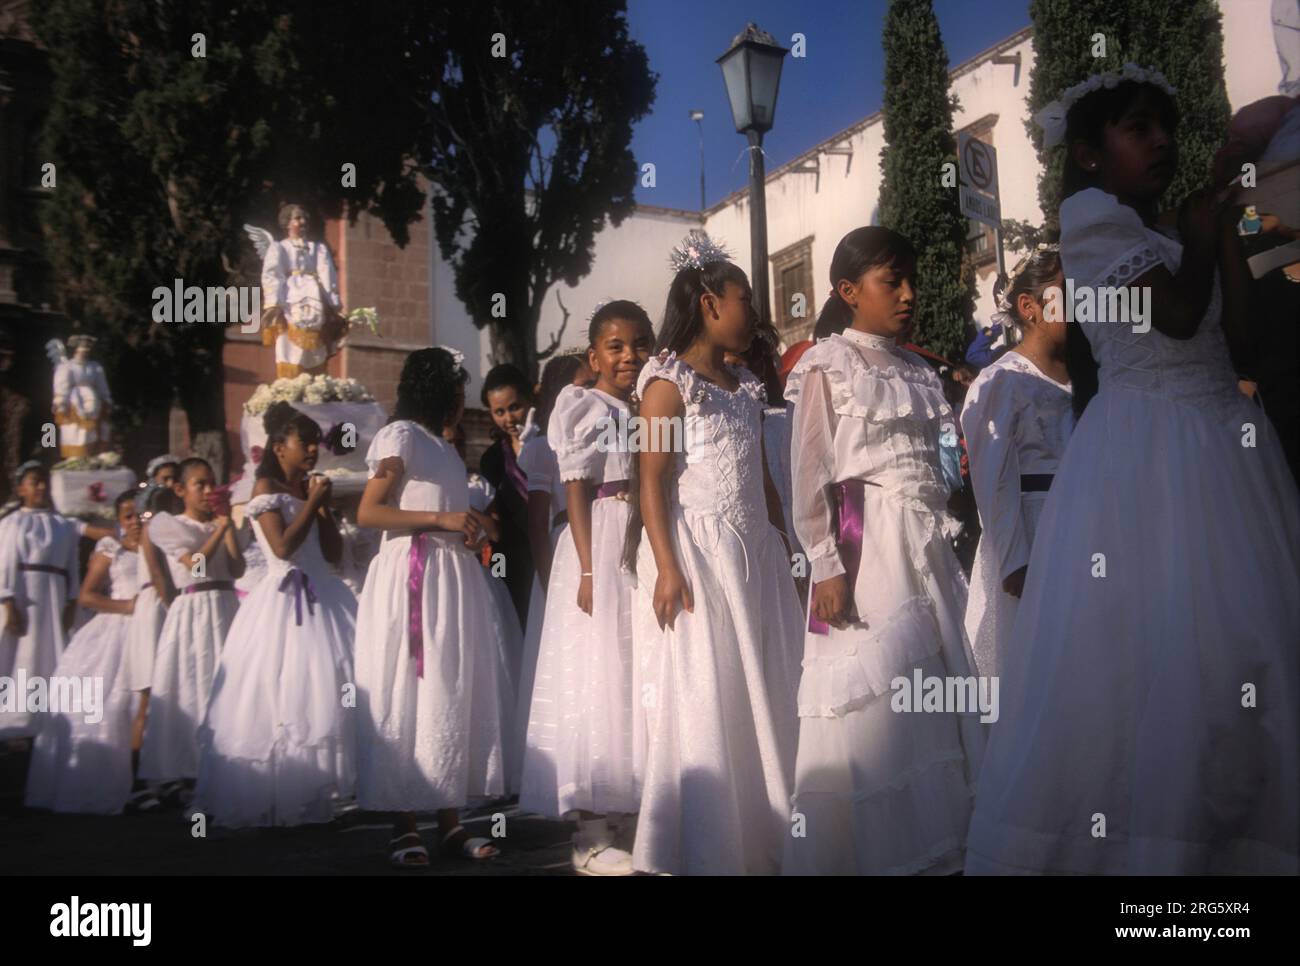 Junge Mädchen in weißen Kleidern während der religiösen Prozession, Semana Santa, San Miguel de Allende, Mexiko Stockfoto